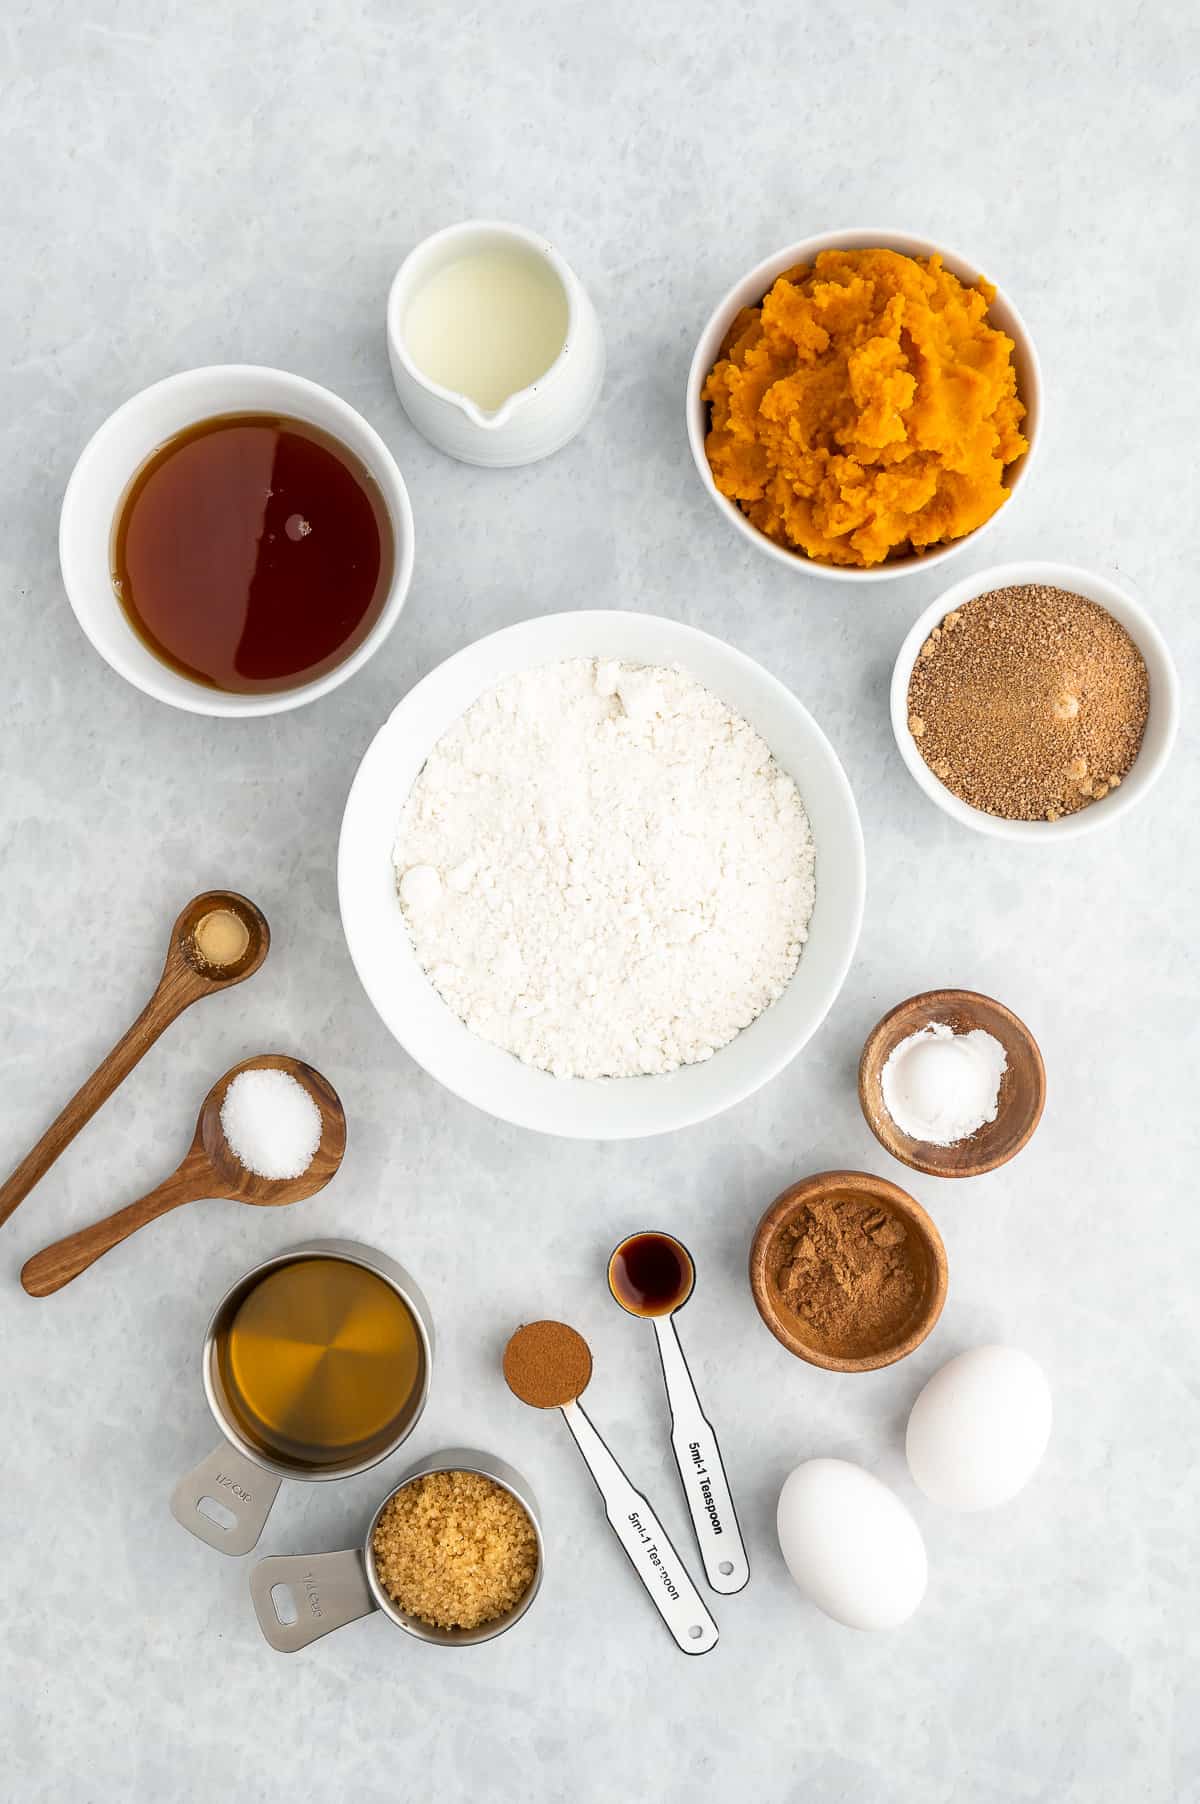 Ingredients for gluten-free pumpkin muffins: gluten-free flour, salt, vanilla, eggs, pumpkin puree, milk, maple syrup, coconut sugar.